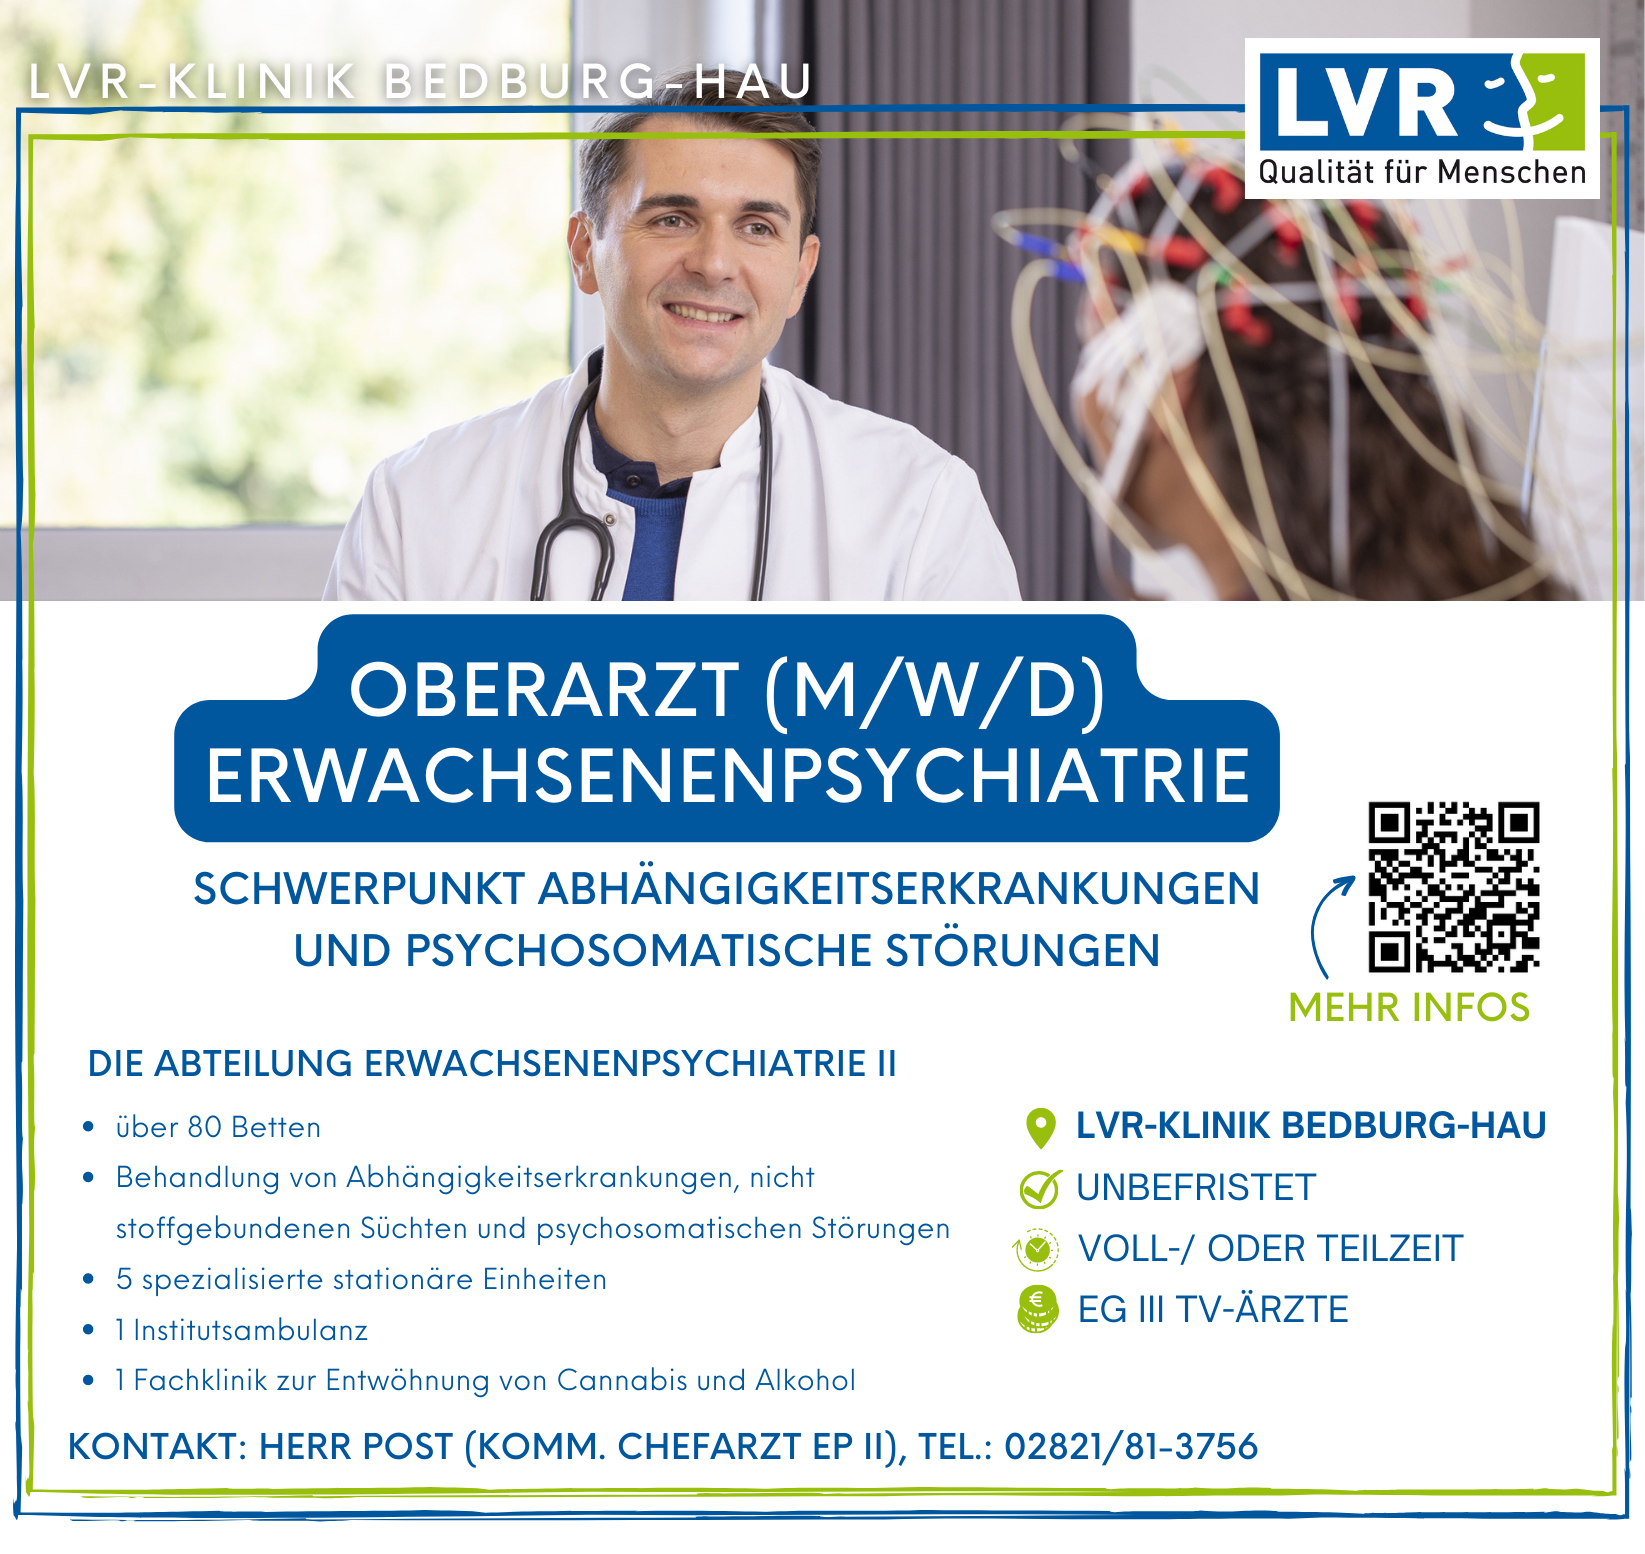 LVR-Klinik Bedburg-Hau Facharzt / Fachärztin Innere / Allgemeinmedizin (m/w/d) Bedburg-Hau medicalcompass.de